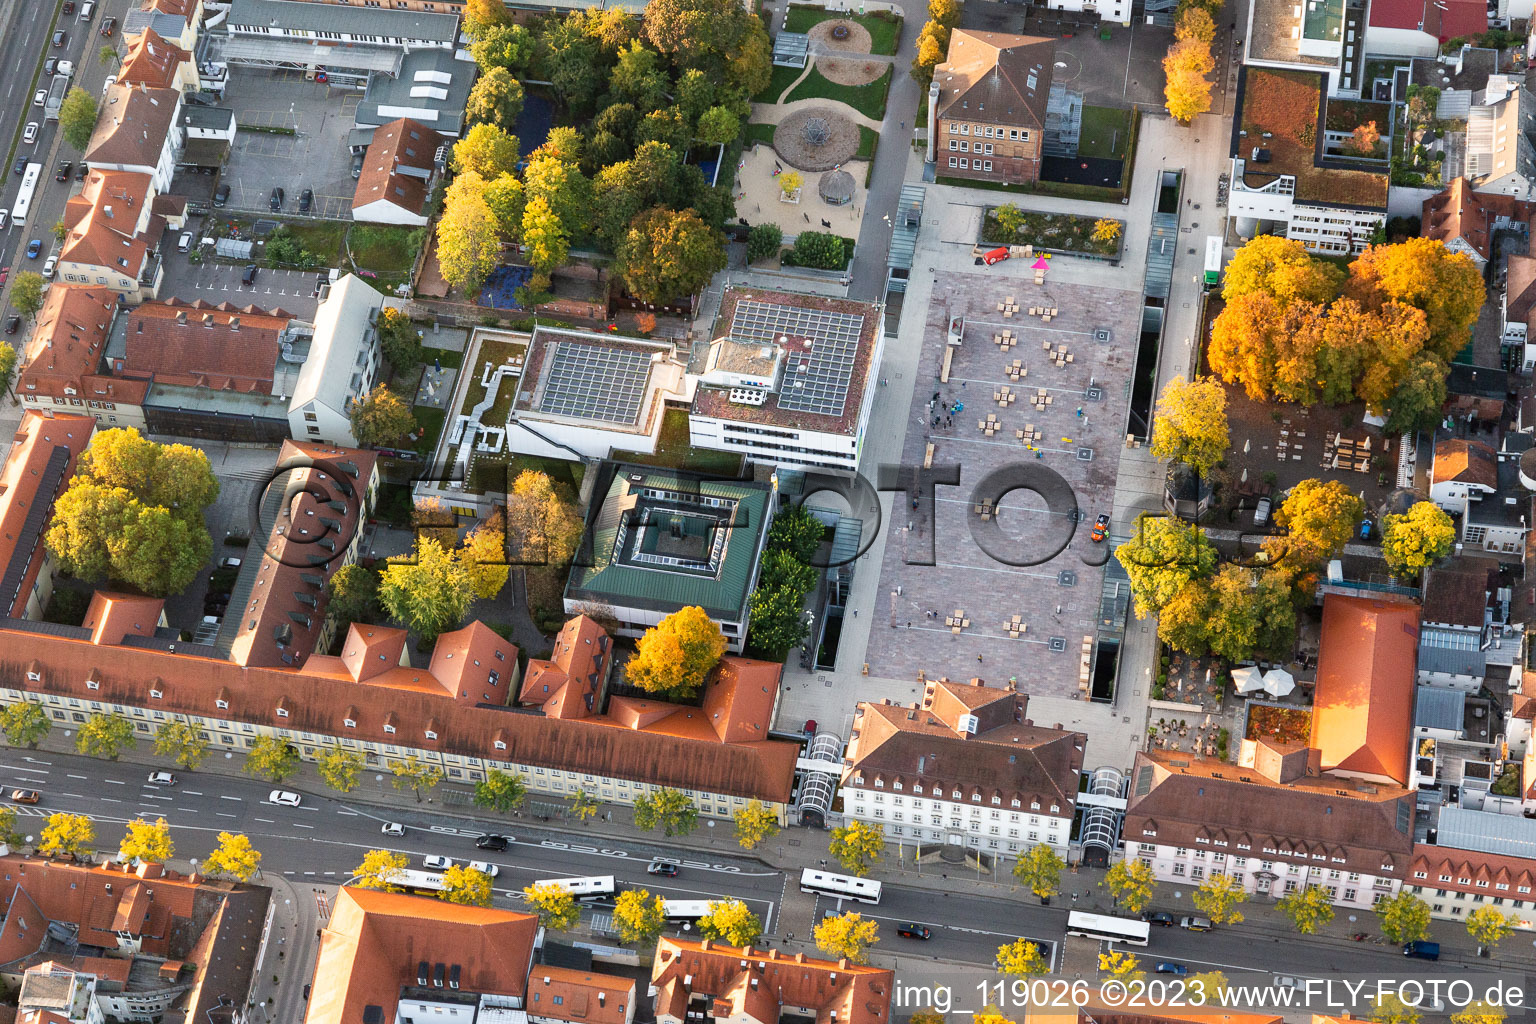 Vue aérienne de Hôtel de ville Ludwigsburg (Infos sur l'hôtel de ville) sur la Rathausplatz à Ludwigsburg dans le département Bade-Wurtemberg, Allemagne